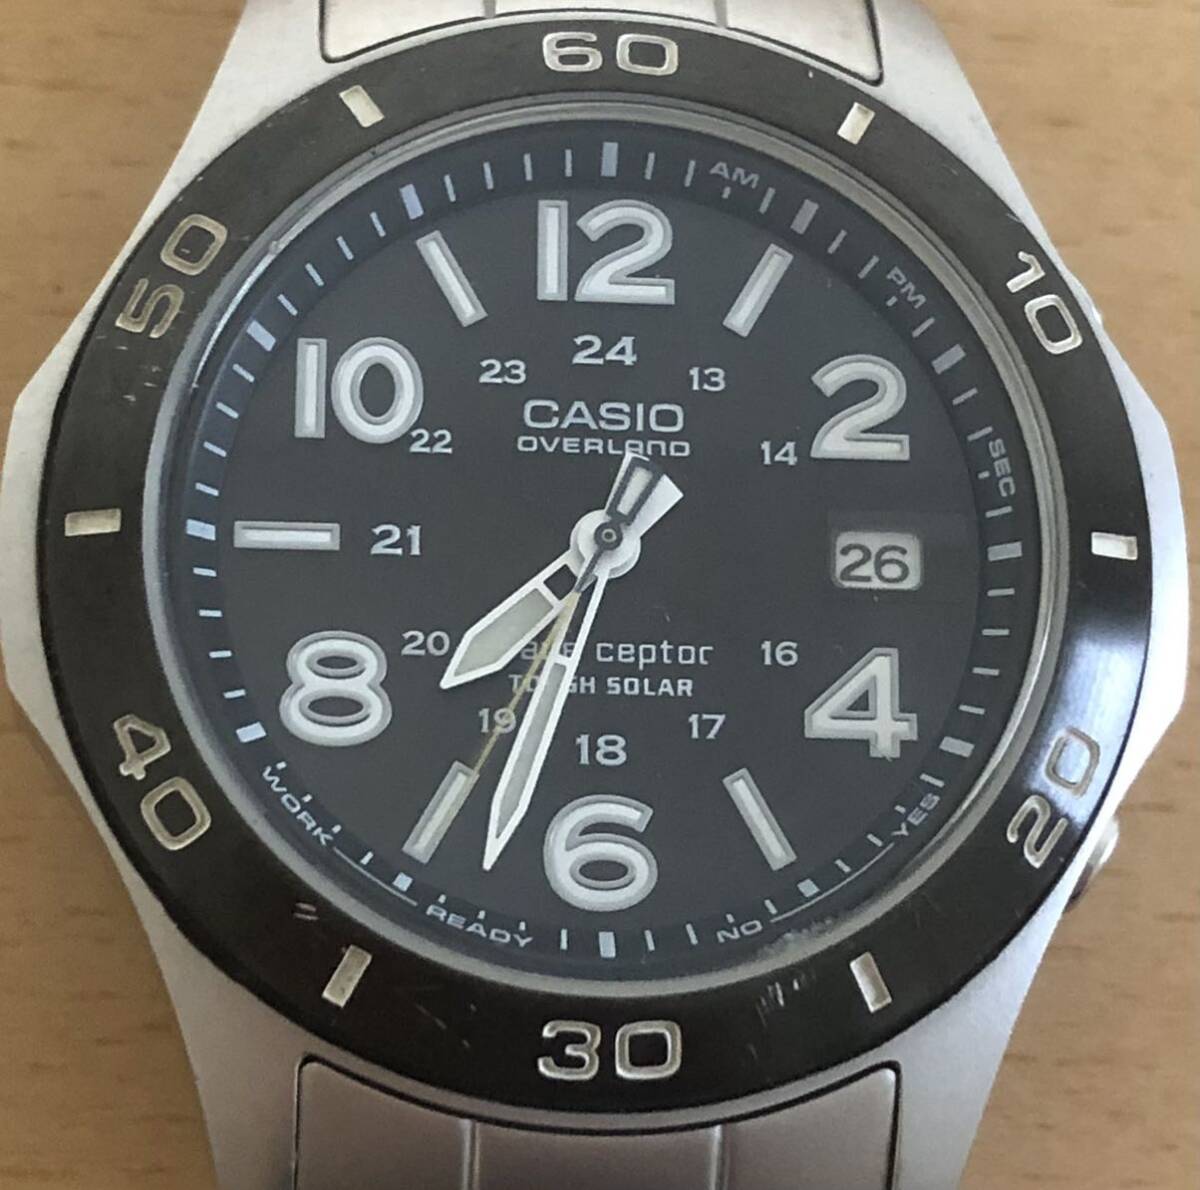 260-0450 CASIO カシオ メンズ腕時計 金属ベルト 電波ソーラー OVERLAND OVW-110 動作確認済みの画像1